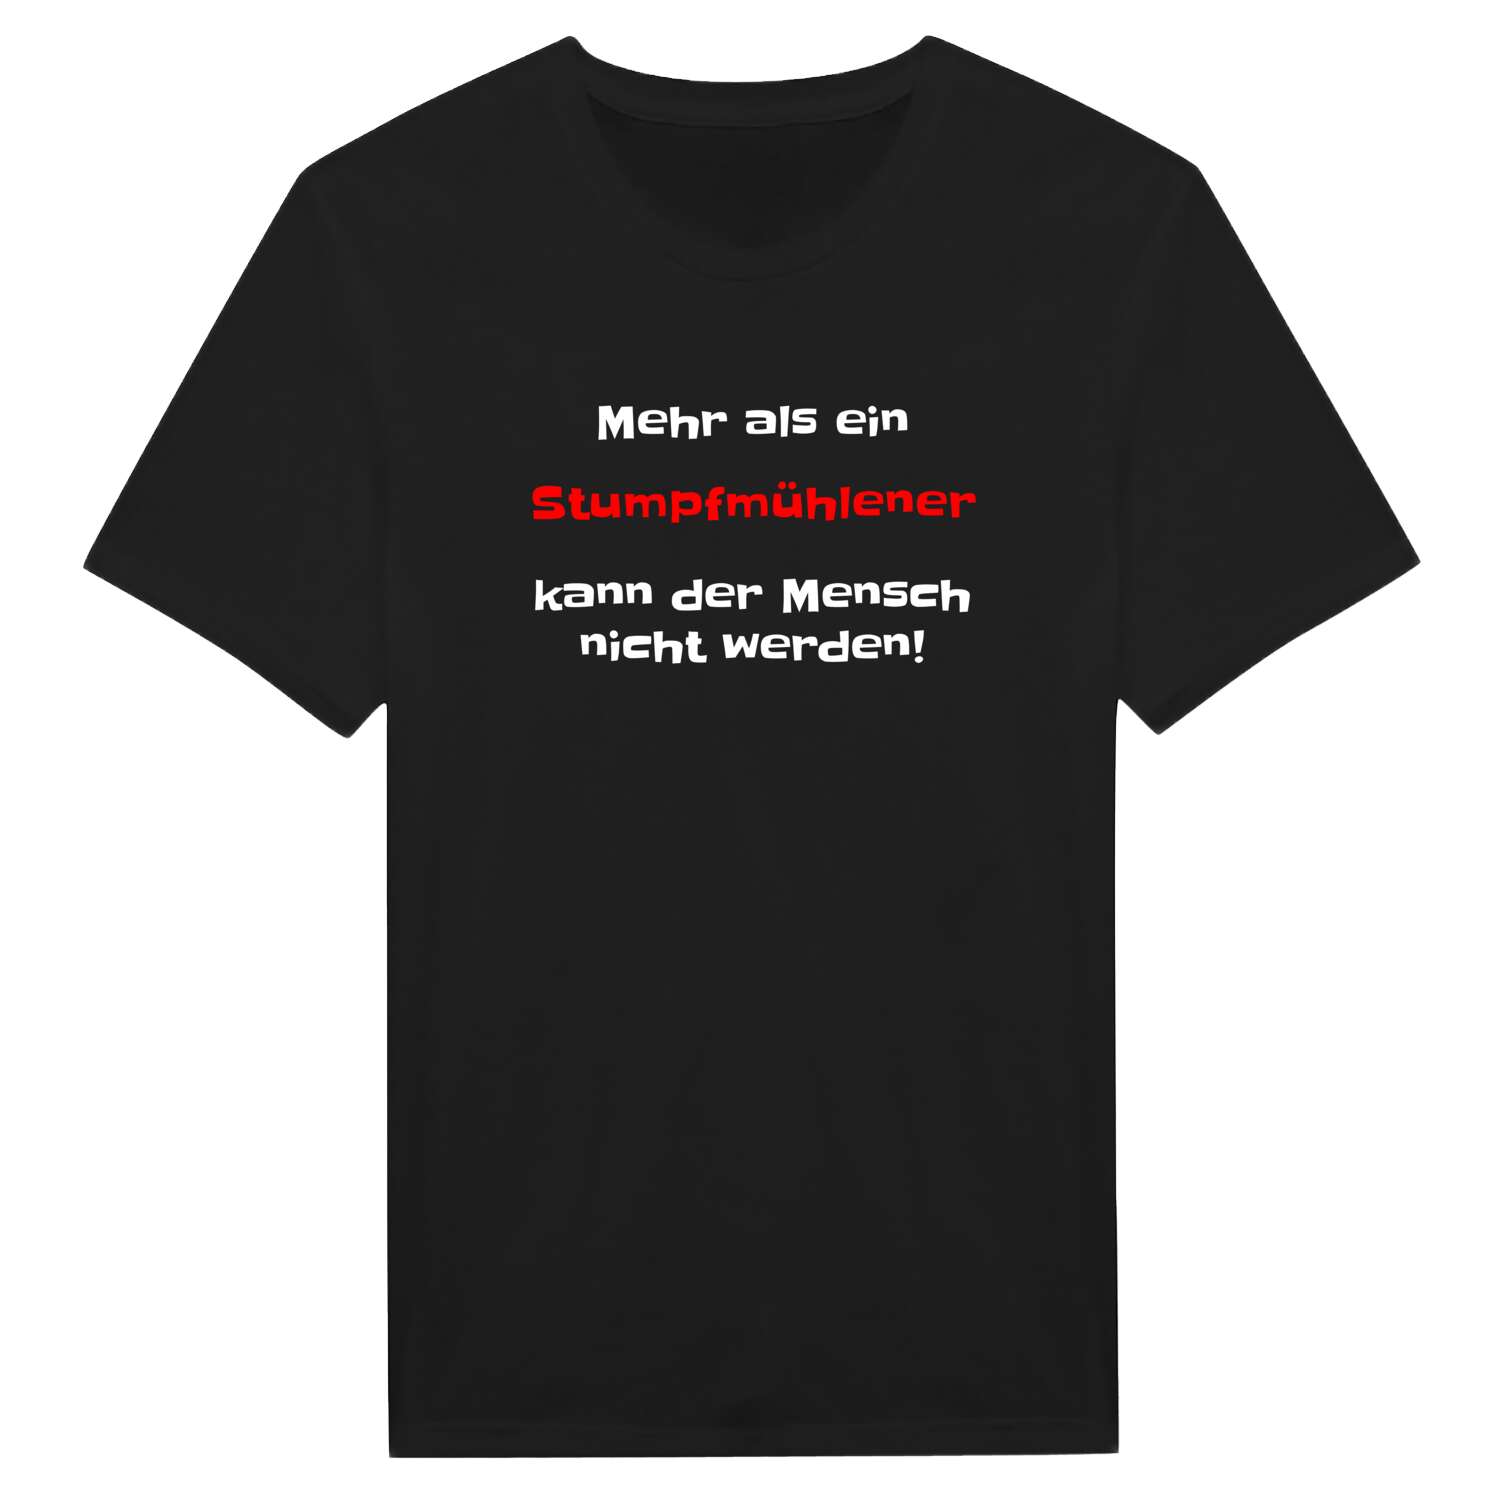 Stumpfmühle T-Shirt »Mehr als ein«